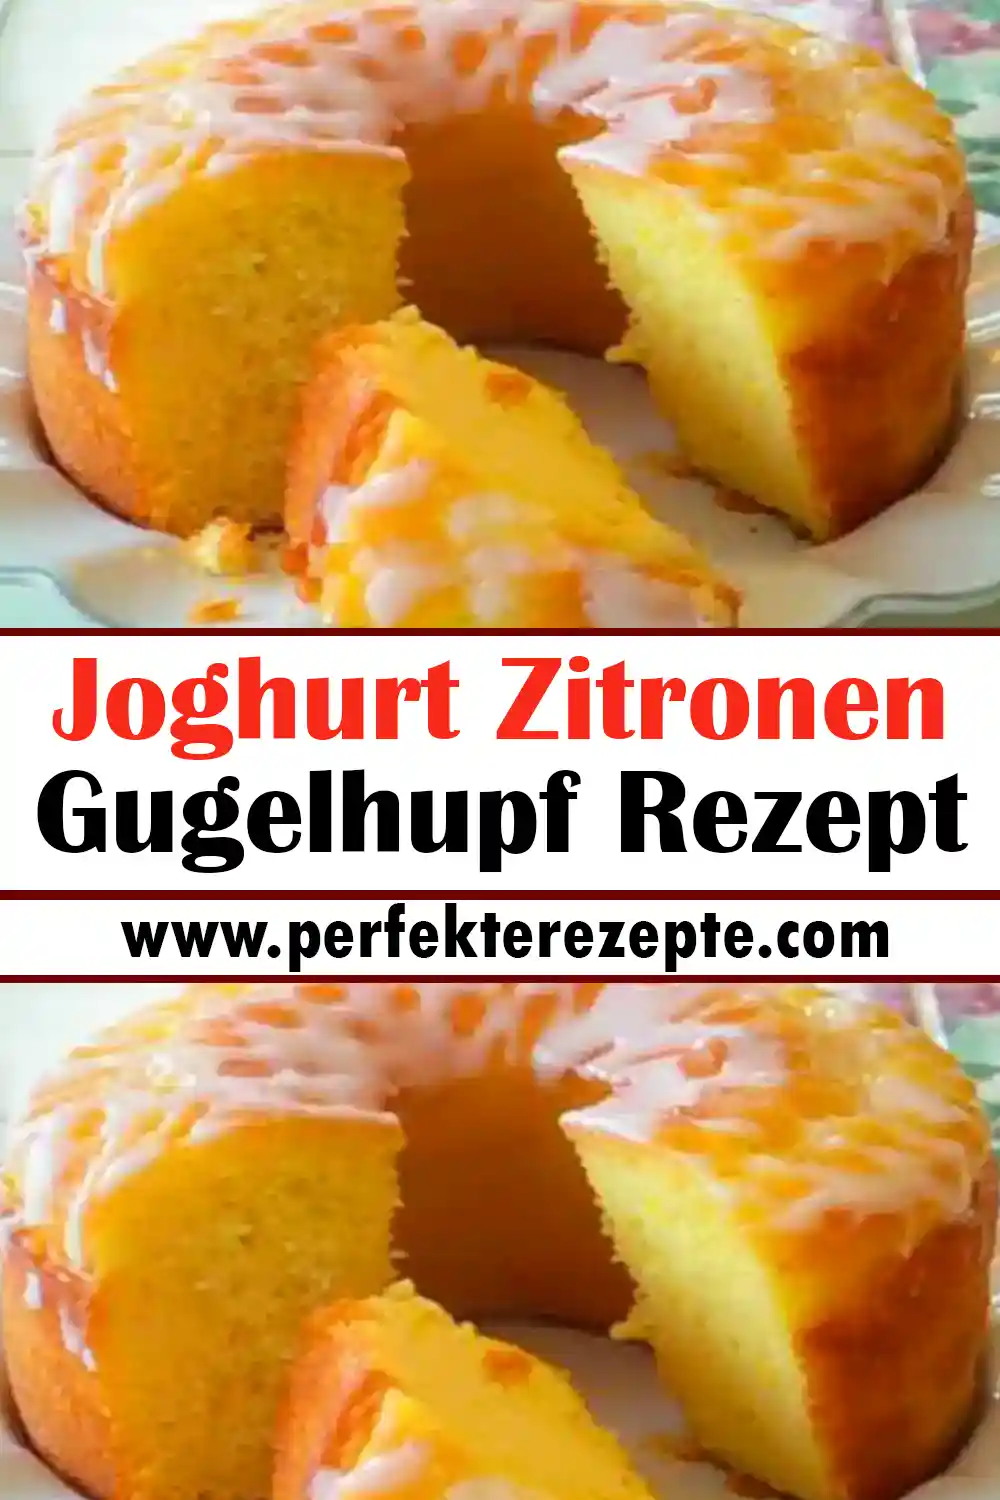 Joghurt Zitronen Gugelhupf Rezept